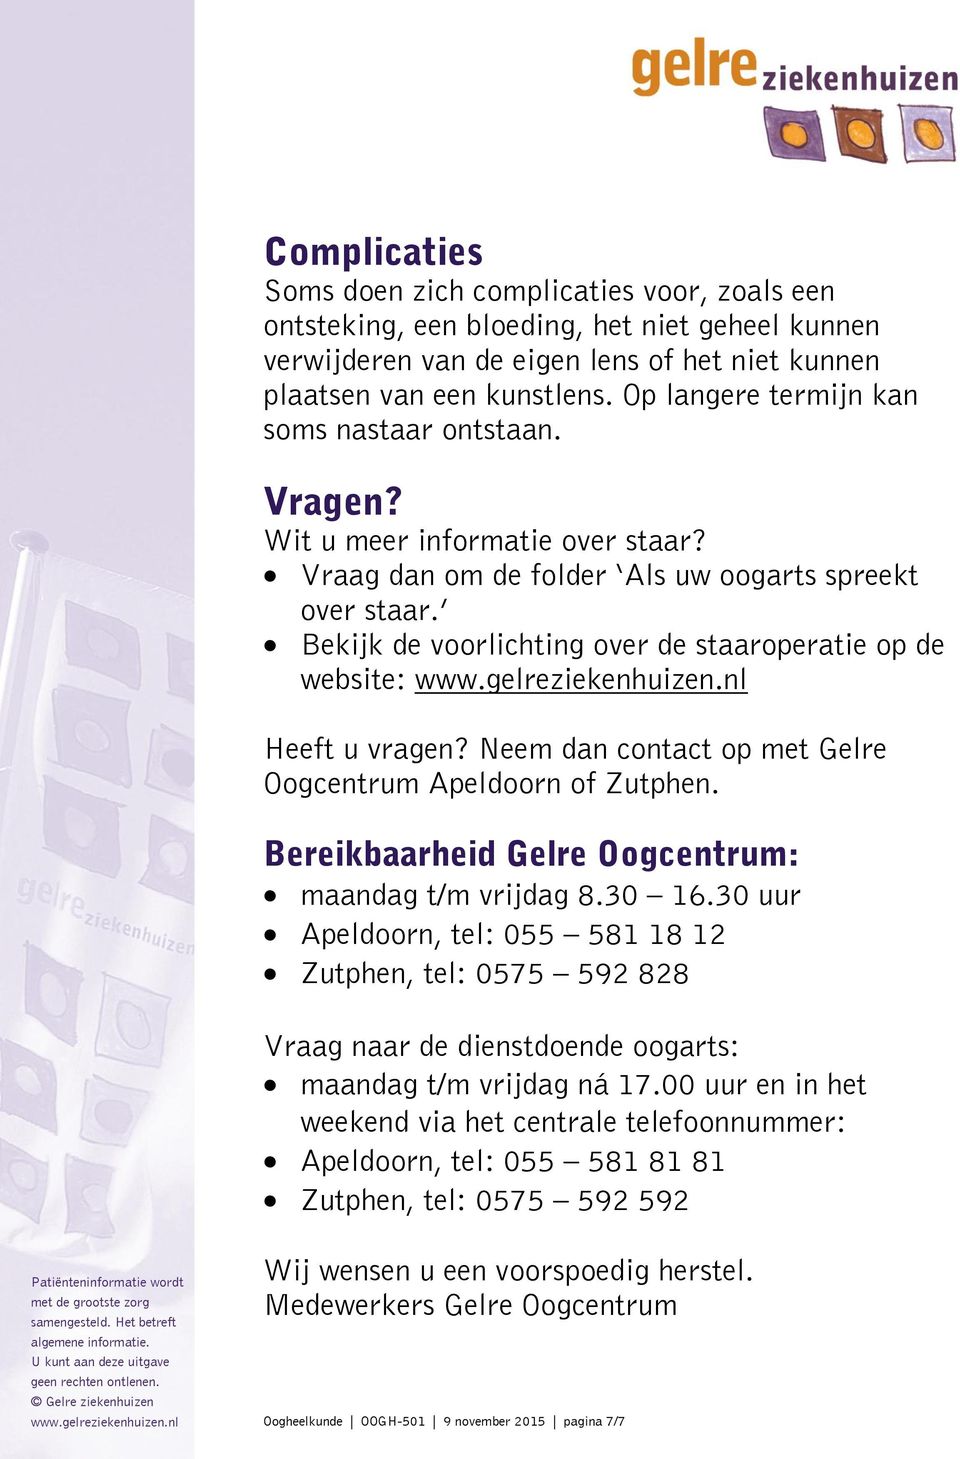 Bekijk de voorlichting over de staaroperatie op de website: Heeft u vragen? Neem dan contact op met Gelre Oogcentrum Apeldoorn of Zutphen. Bereikbaarheid Gelre Oogcentrum: maandag t/m vrijdag 8.30 16.